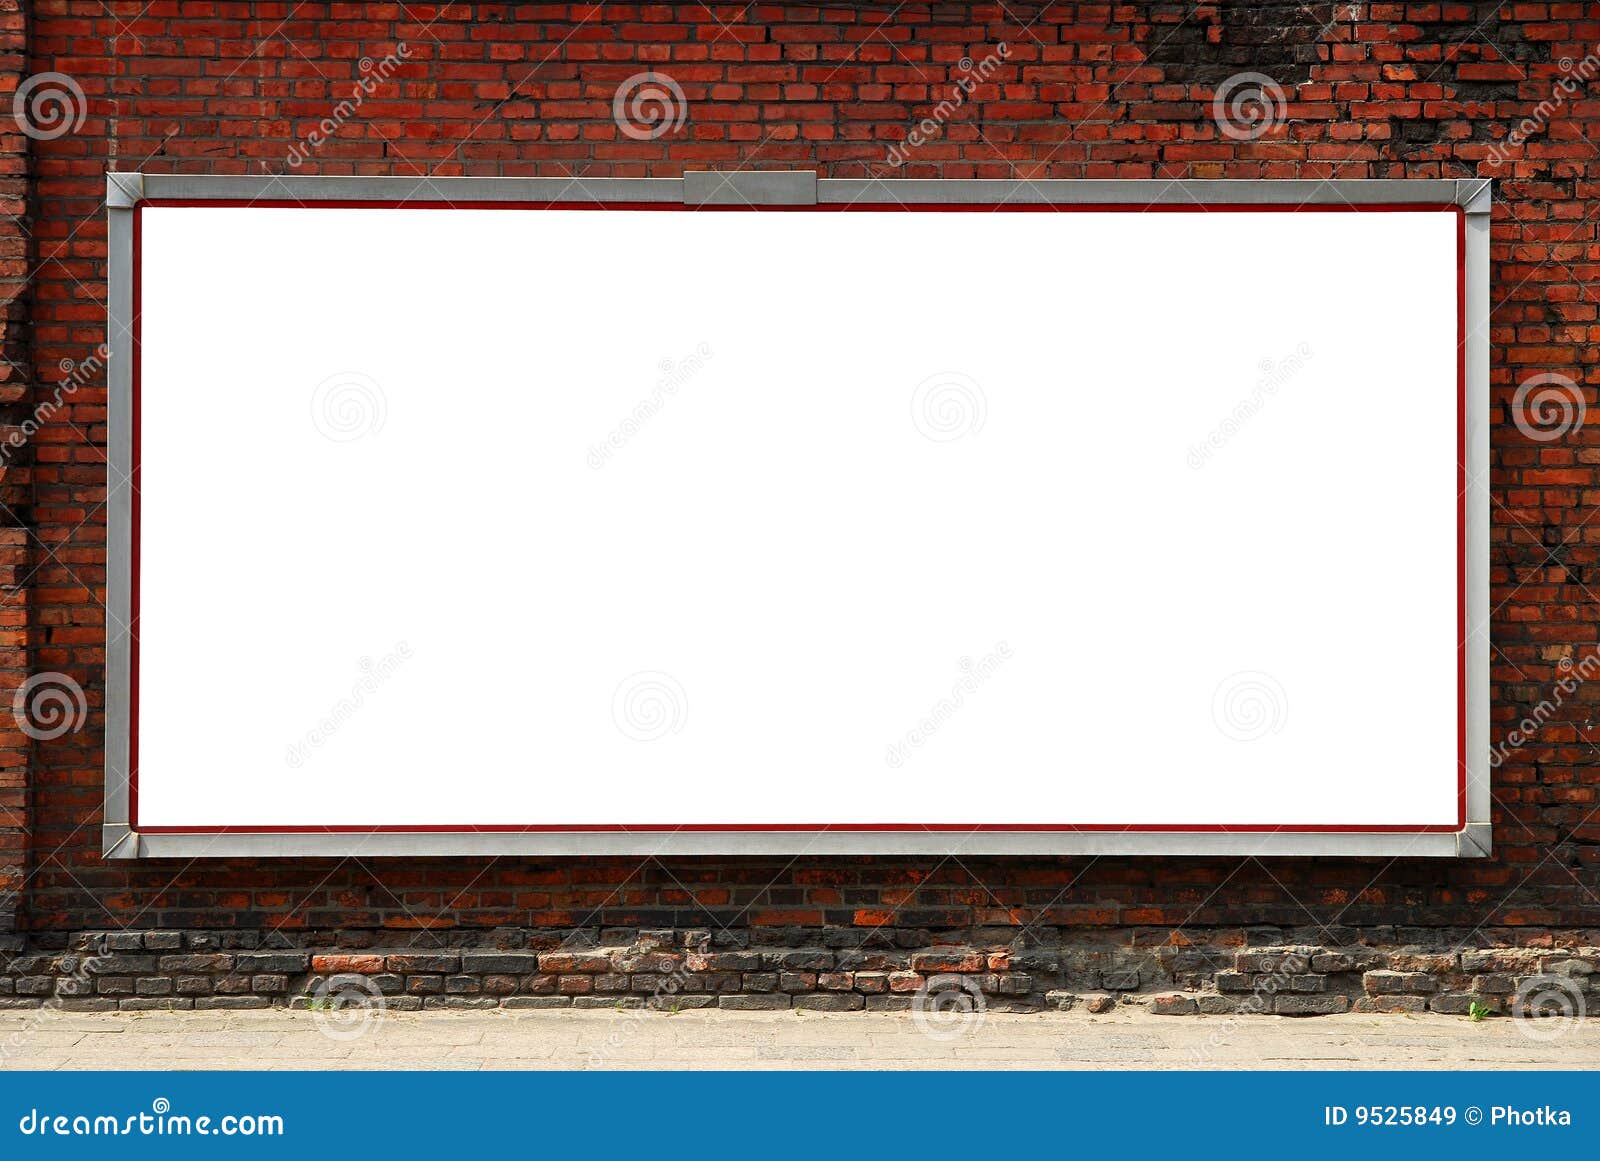 billboard on a brick wall